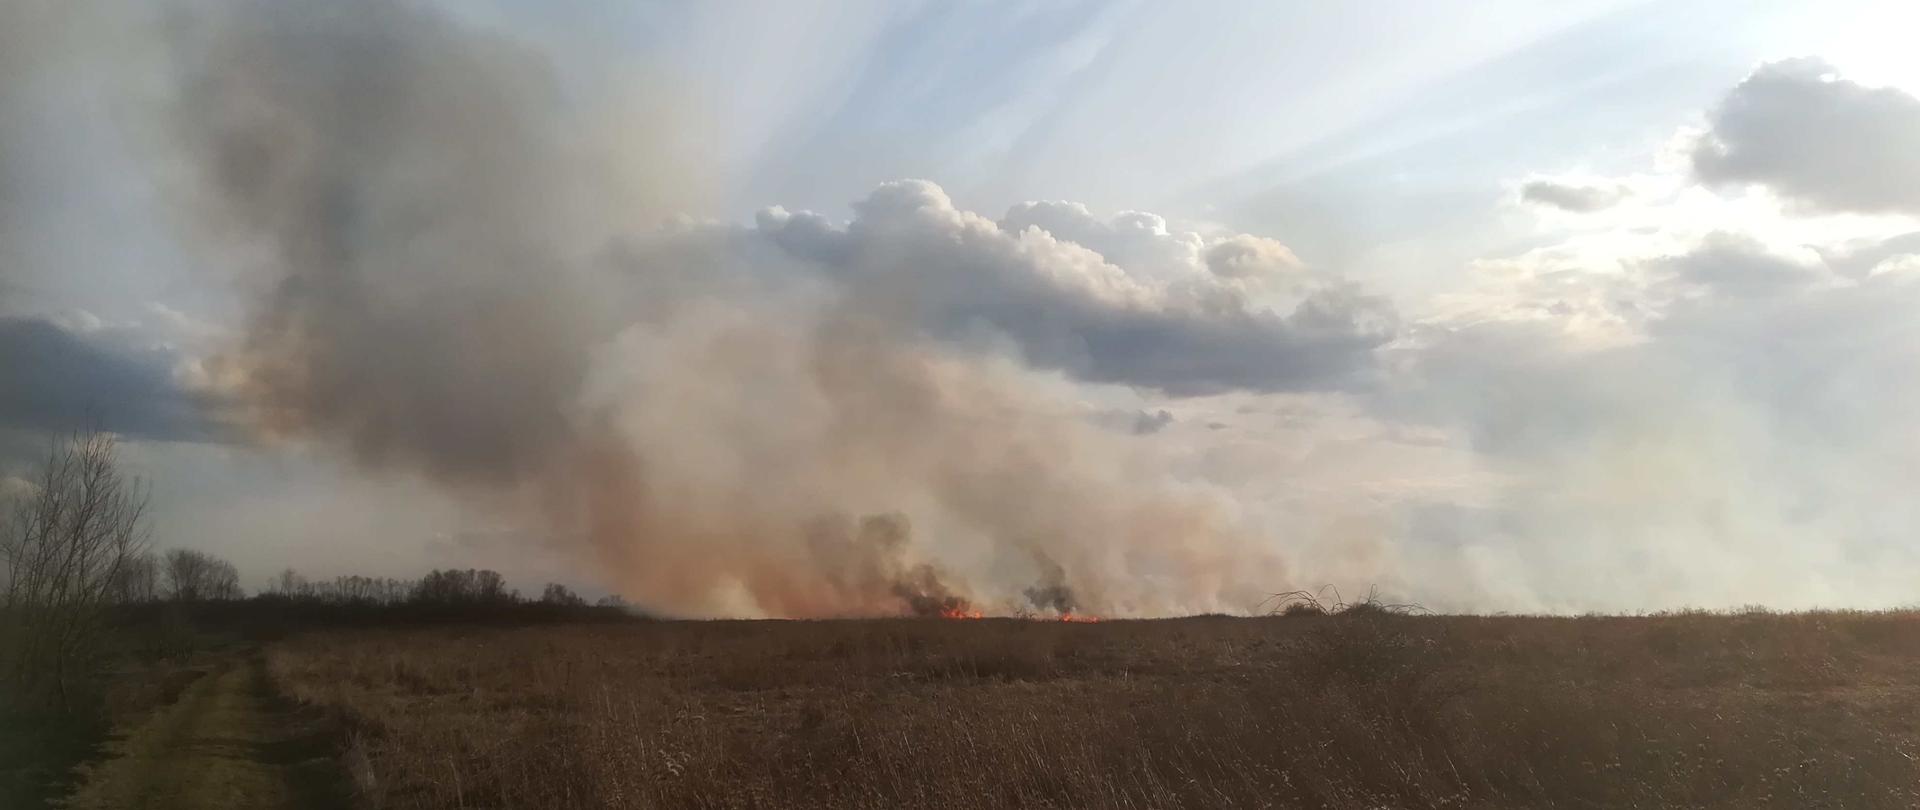 Zdjęcie zrobione na rozległym terenie, po lewej stronie biegnie droga gruntowa na horyzoncie widać płomienie z palącej się trawy i unoszący się dym. Na zachmurzonym niebie widać promienie słońca zza chmur. 